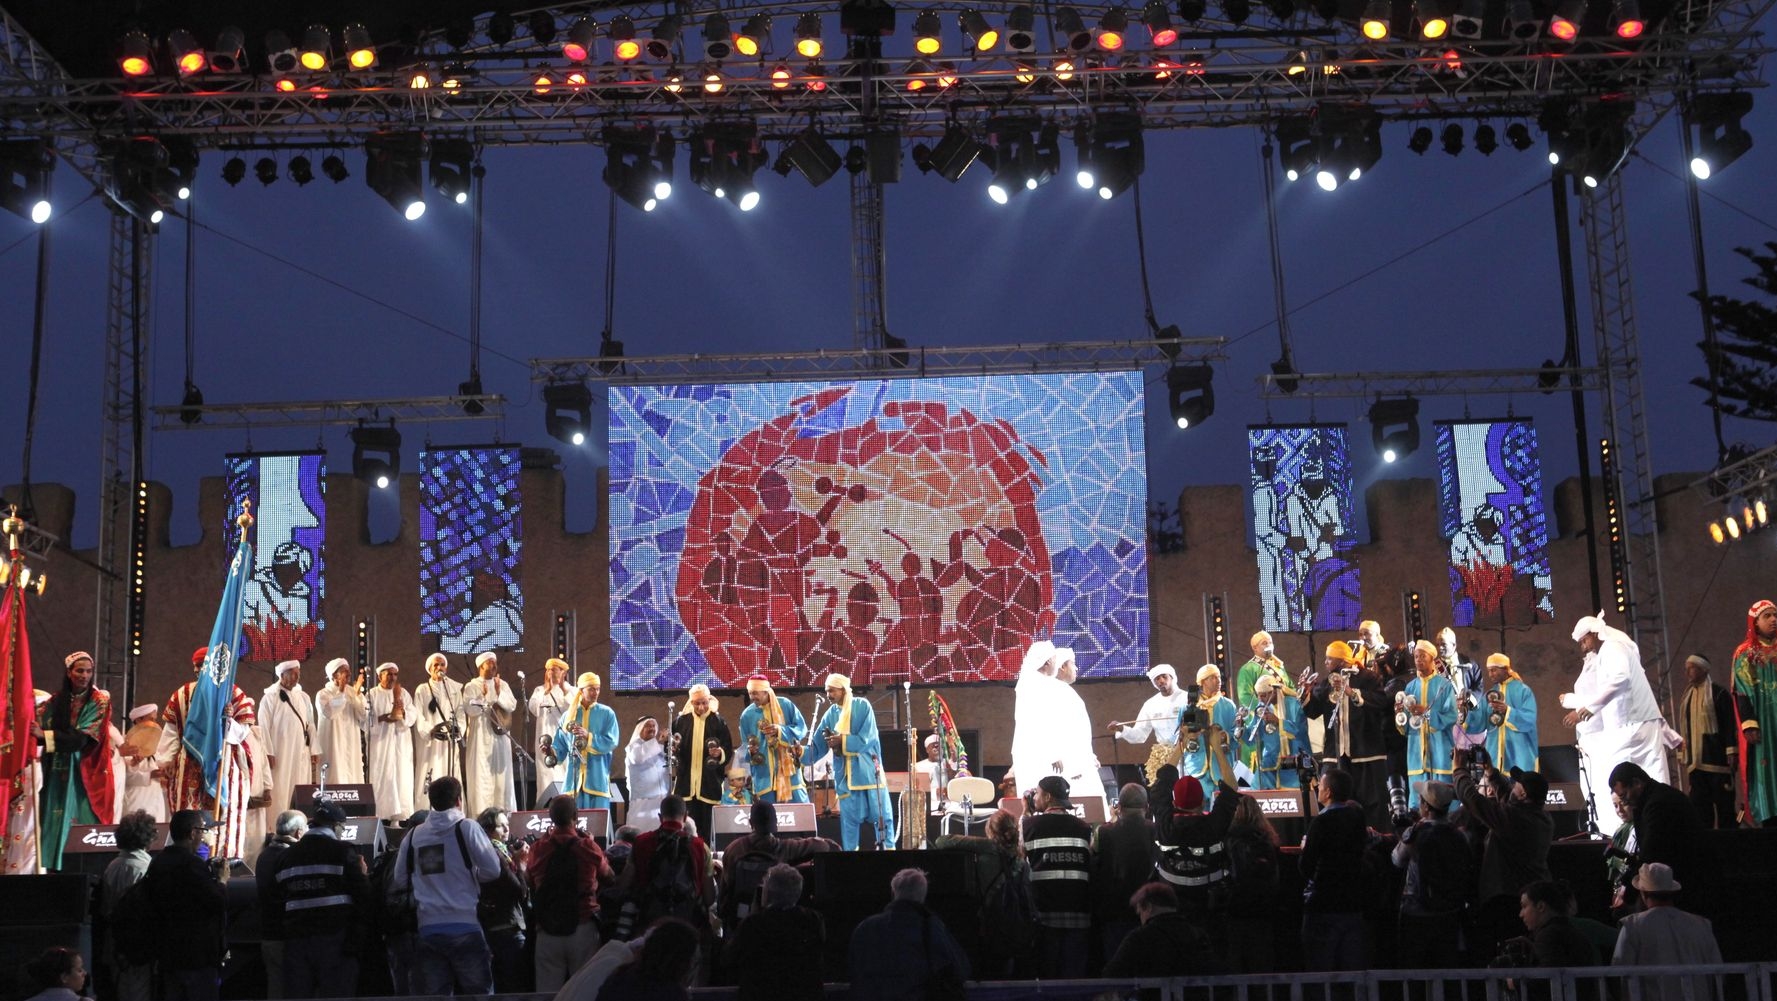 Le groupe Annadi Al Bahri paratage la scène avec Houwara et la troupe du Maâlem Said Kouyou pour un concert d'ouverture haut en couleurs
